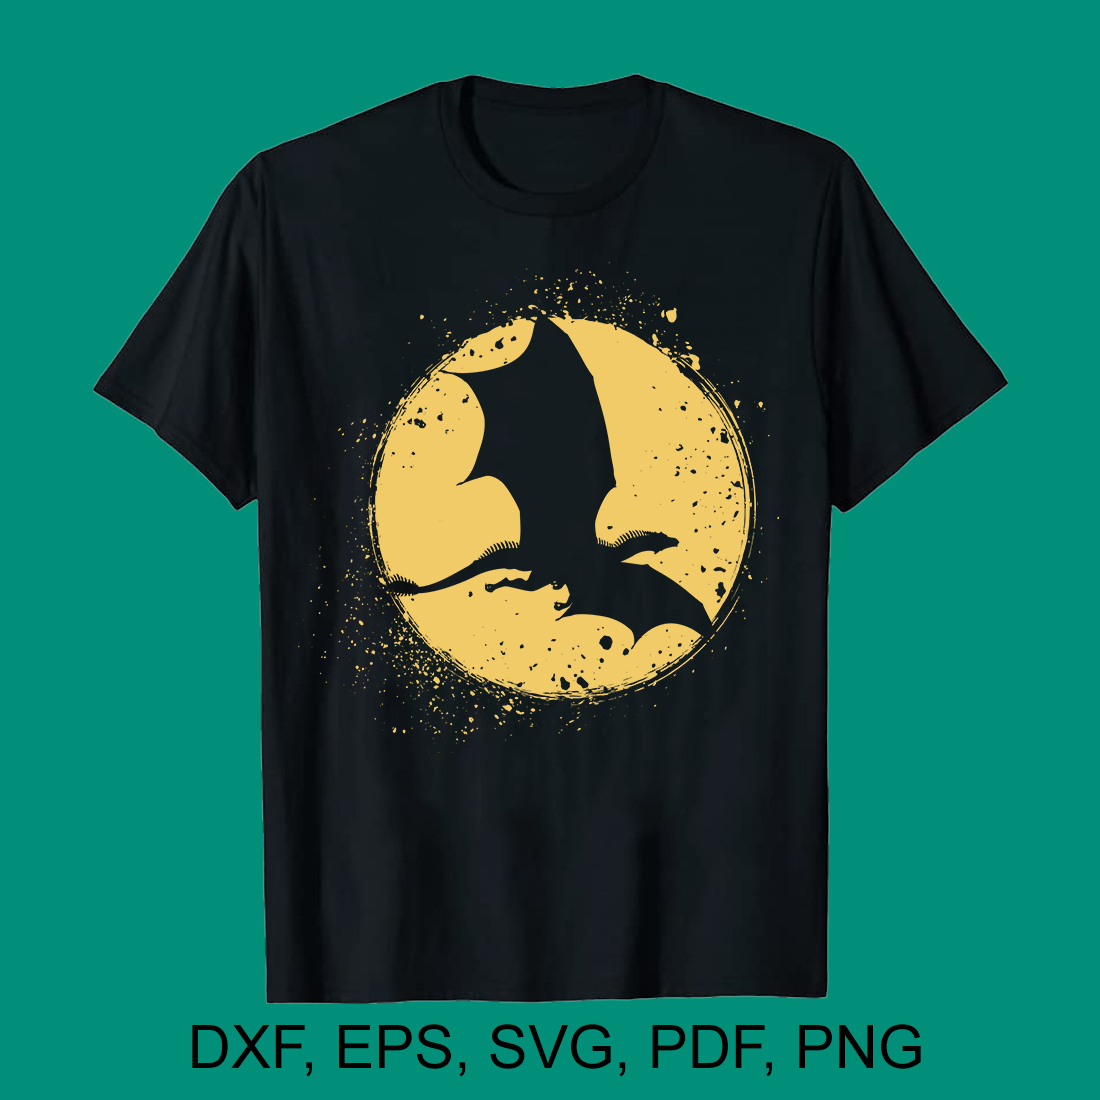 Flying Dinosaur Illustration SVG t-shirt Design preview image.